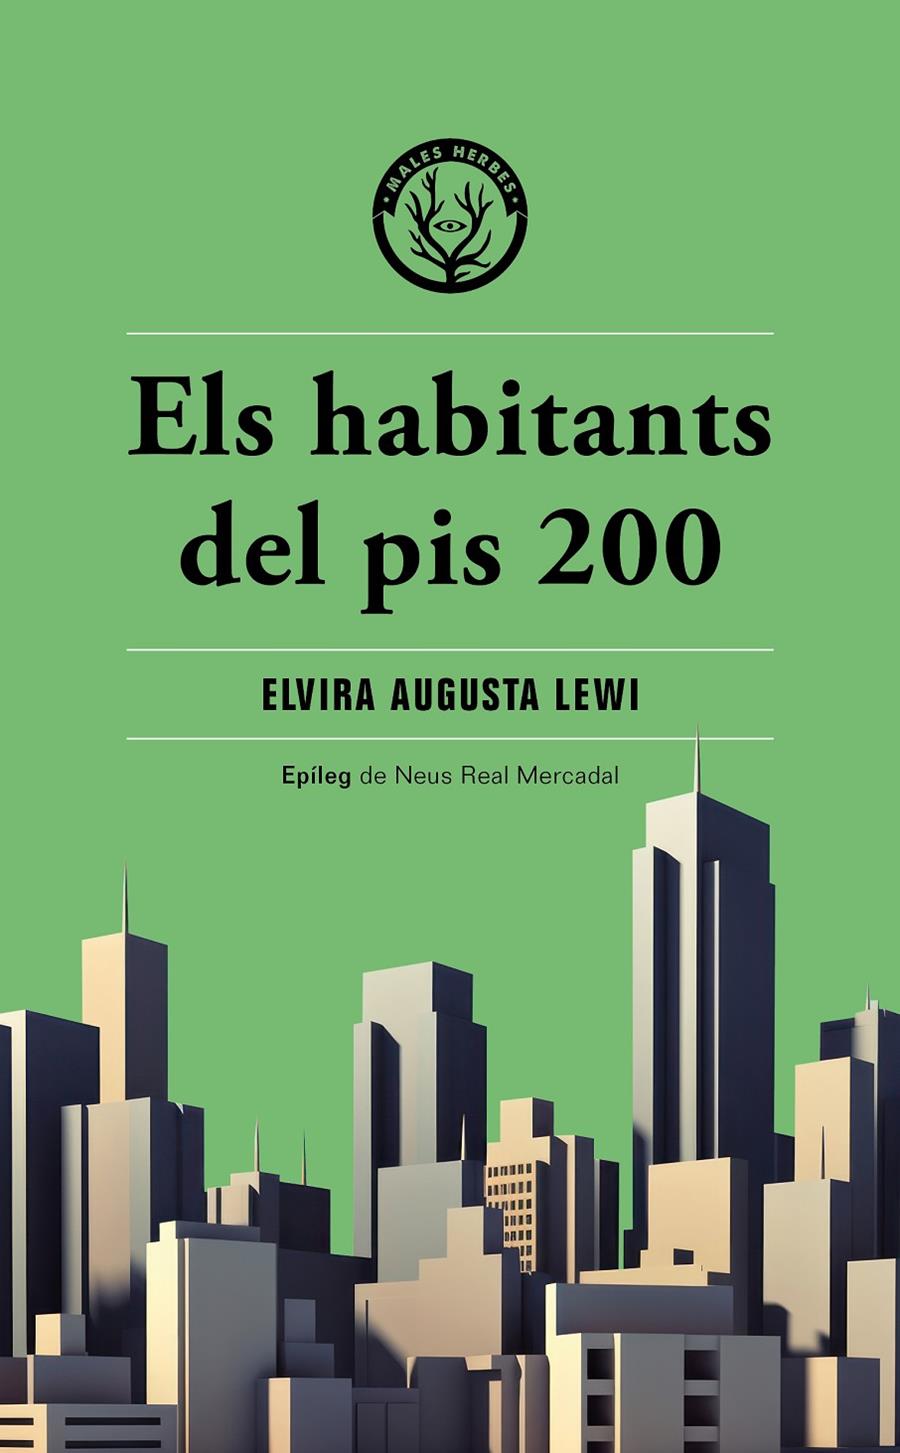 Els habitants del pis 200 | Augusta Lewi, Elvira | Cooperativa autogestionària